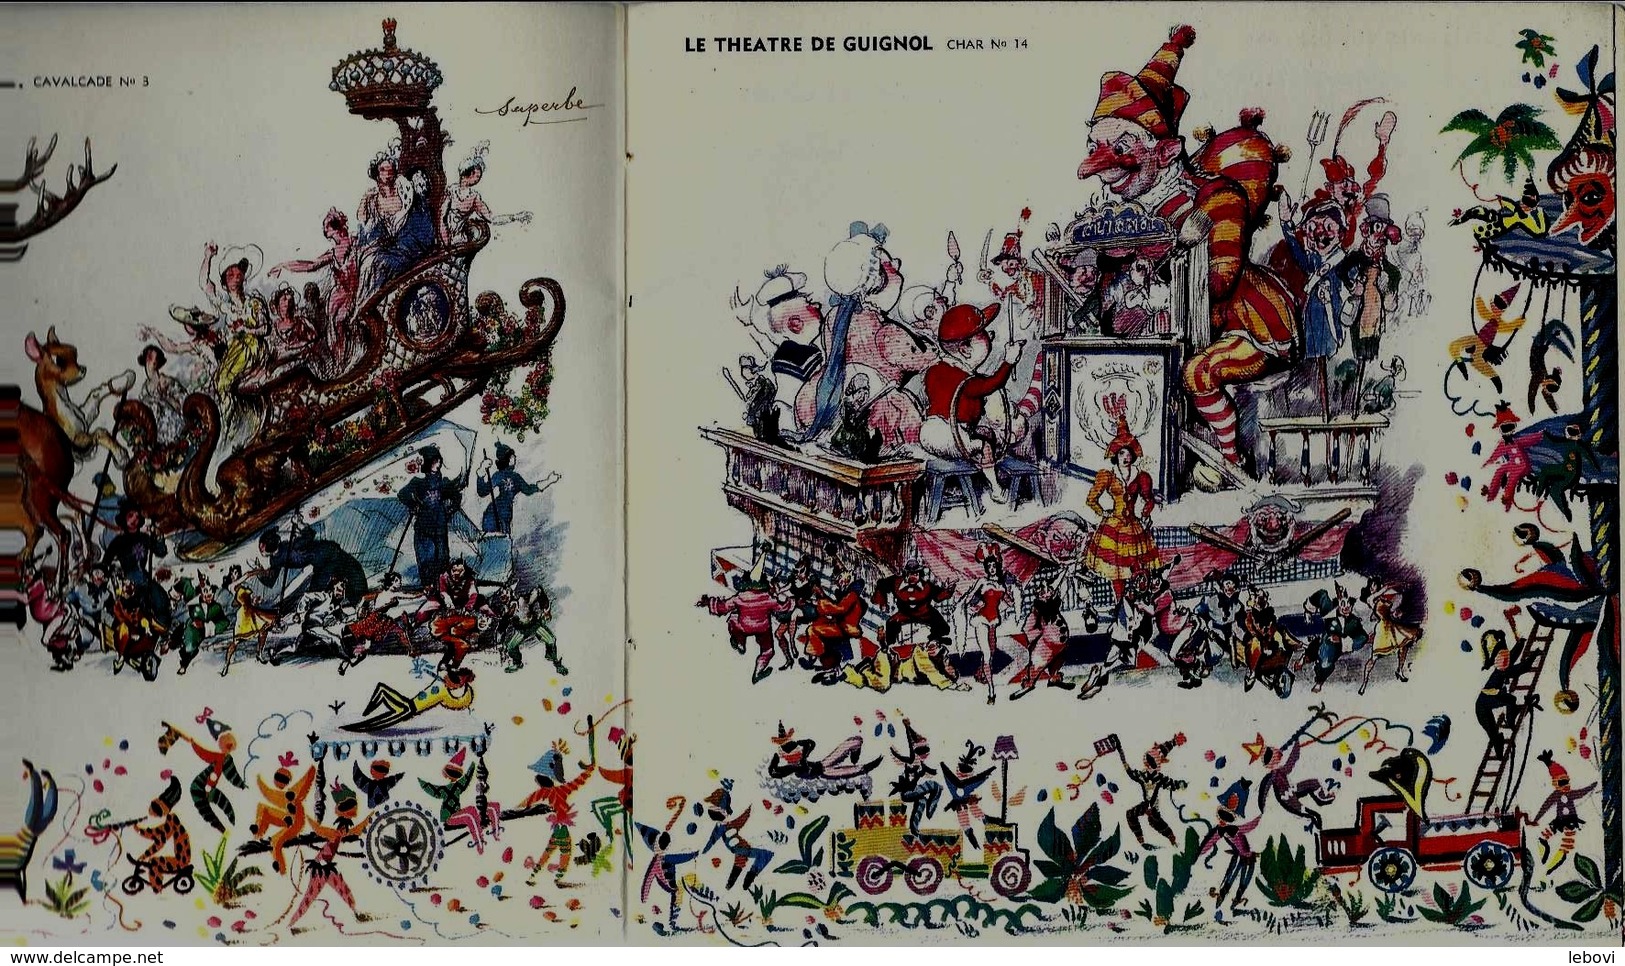 NICE Carnaval 1954  - Présentation Des Chars - Carnaval